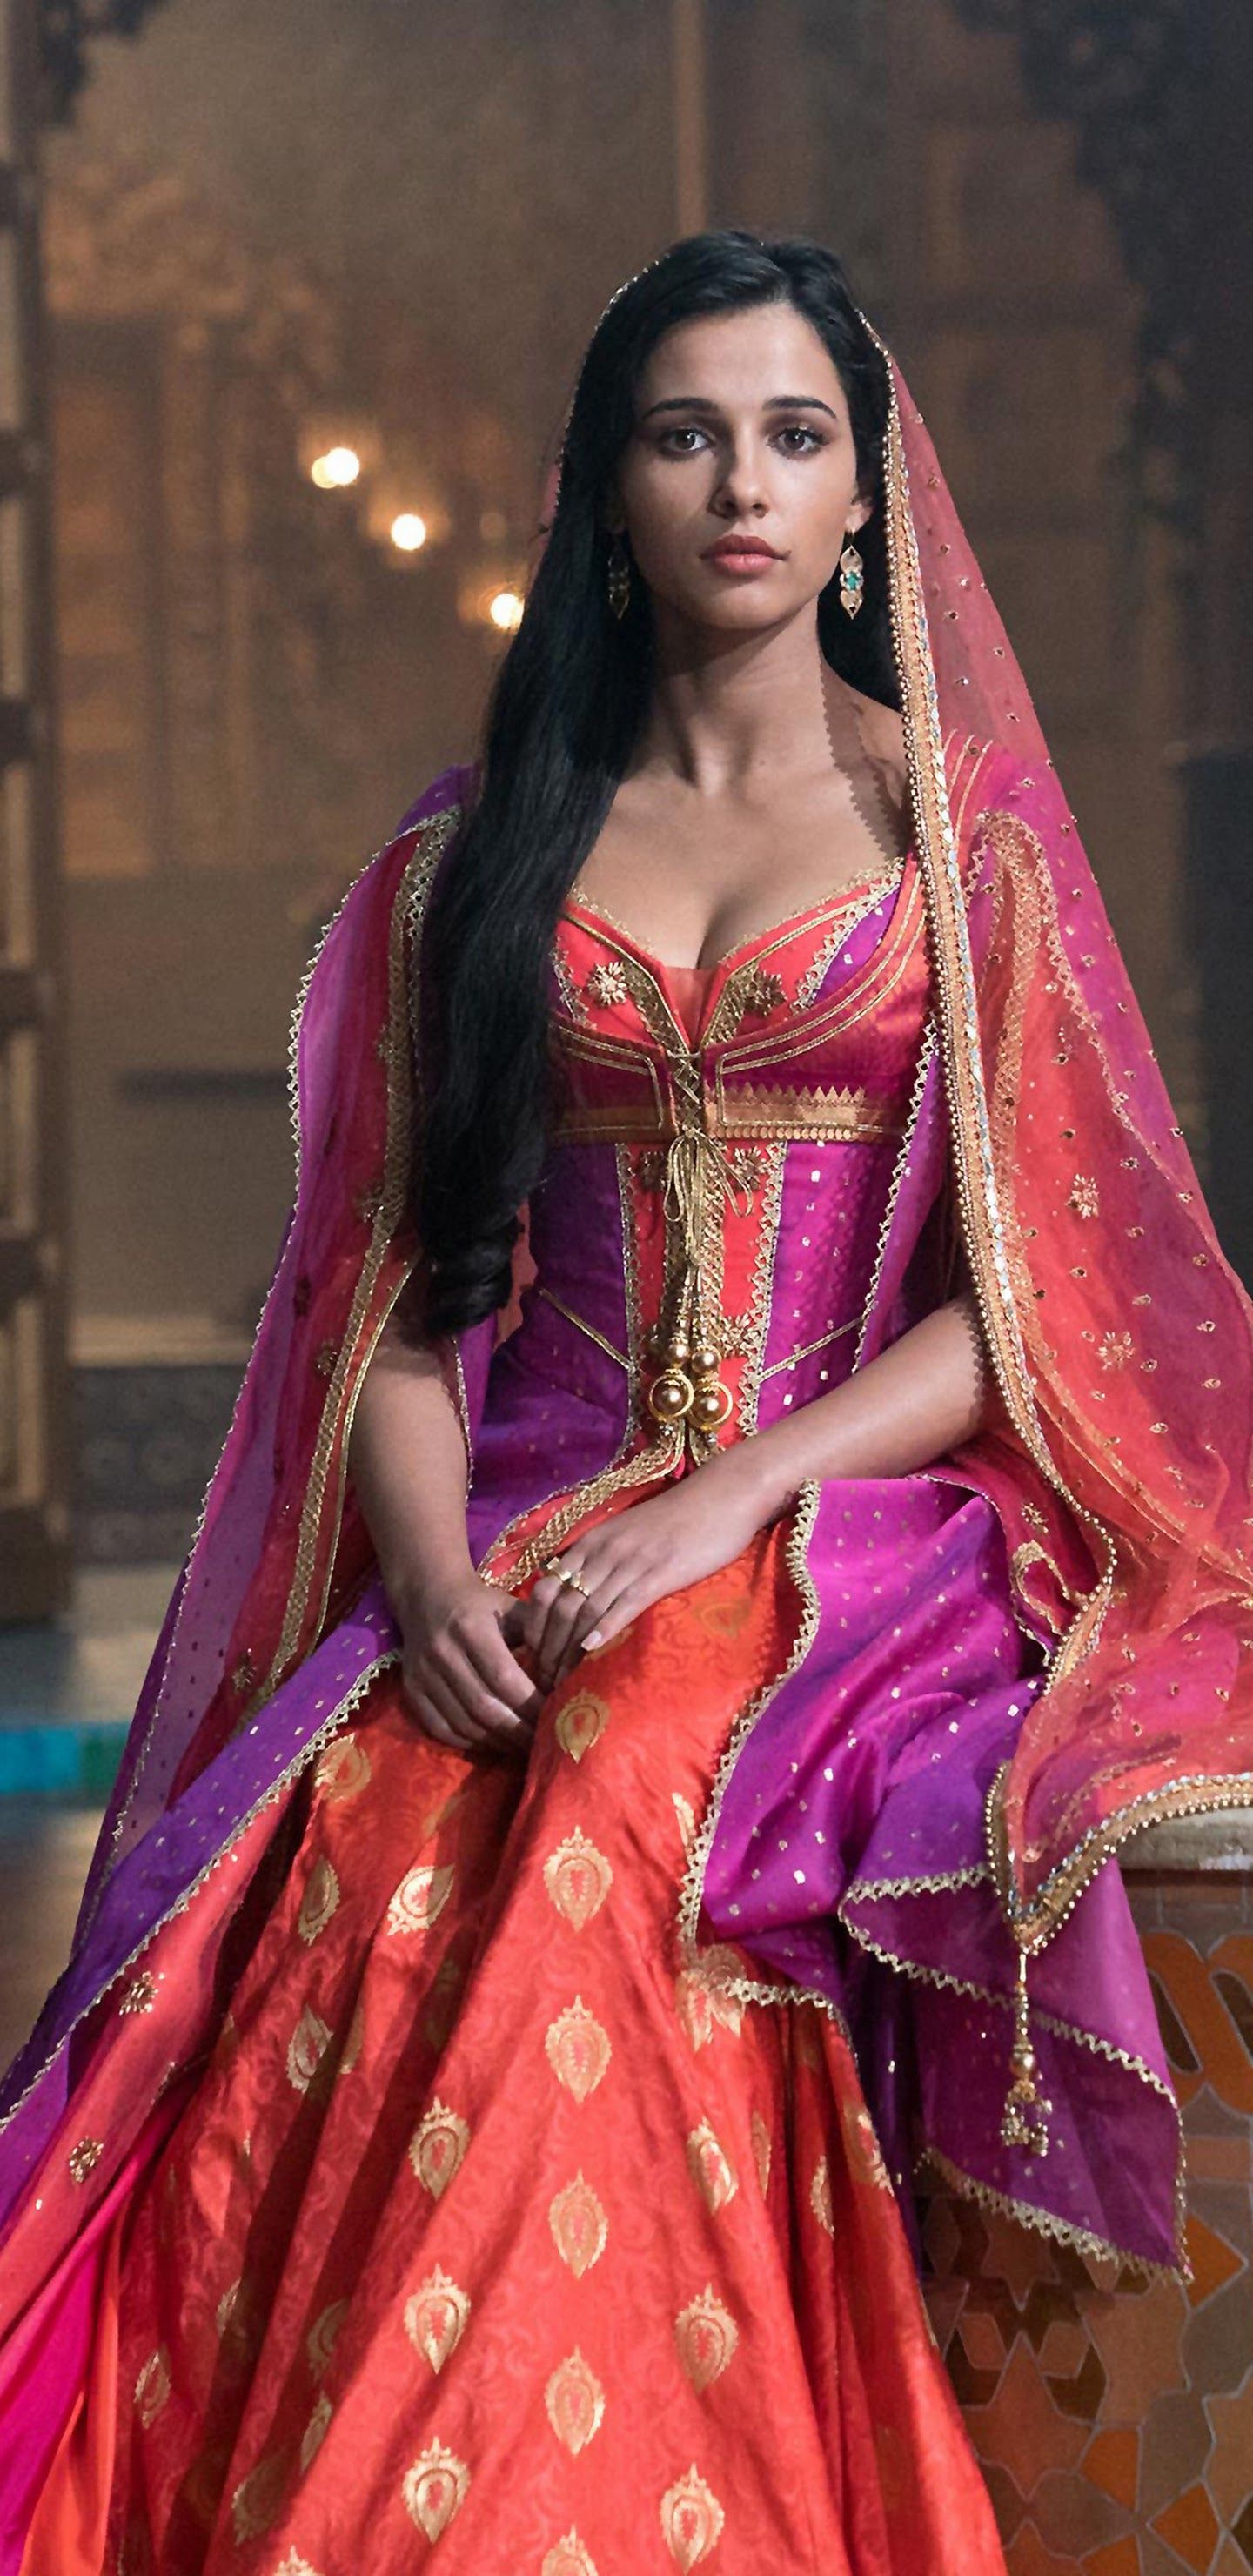 Princess Jasmine Aladdin 2019 Naomi .uhdpaper.com